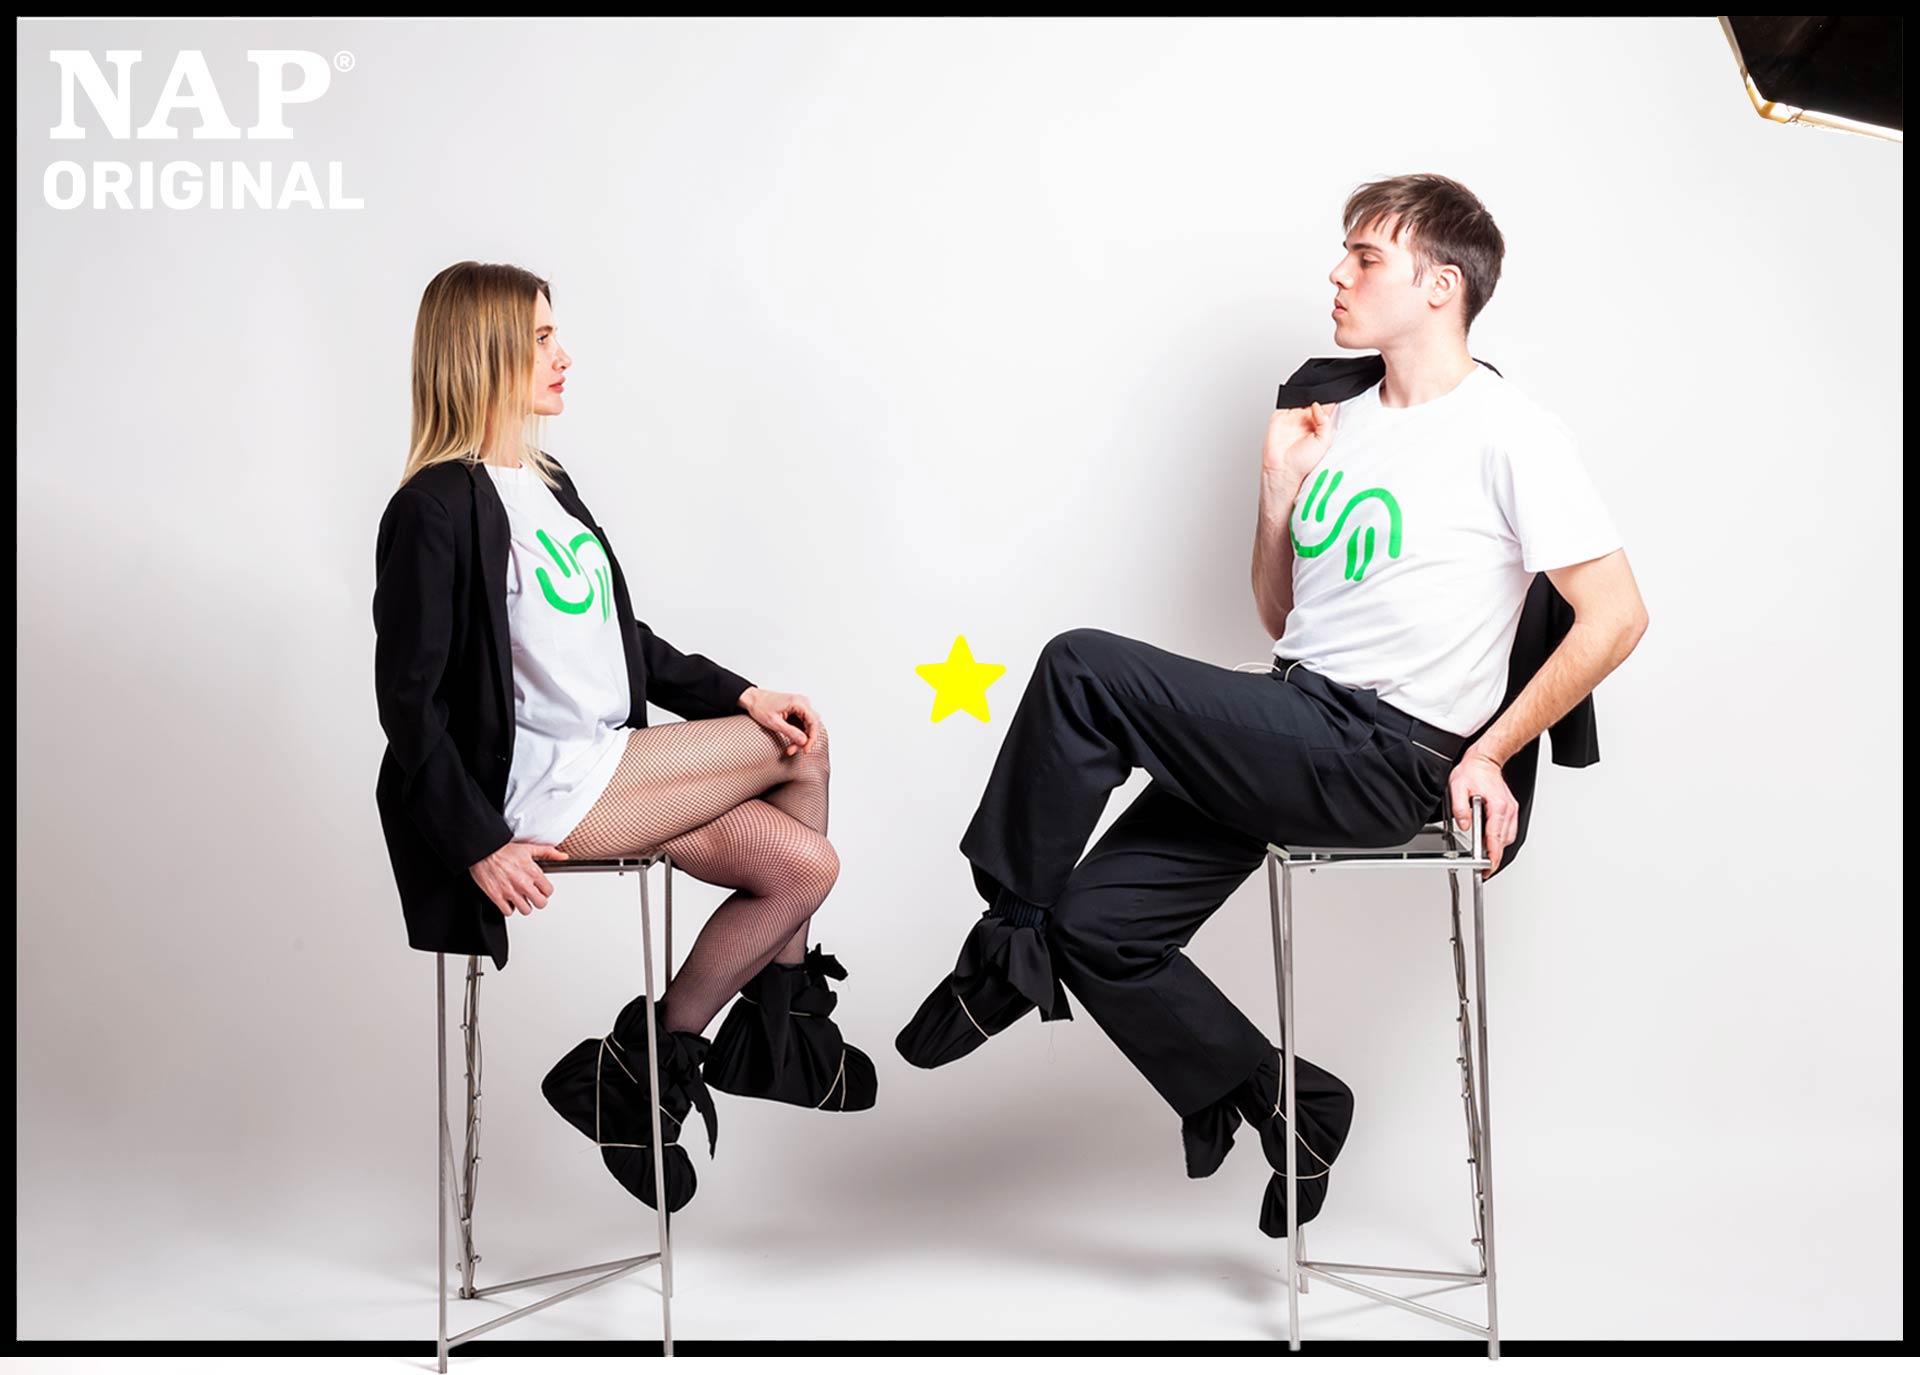 Uomo e donna indossano moda ecosostenibile NAP Original